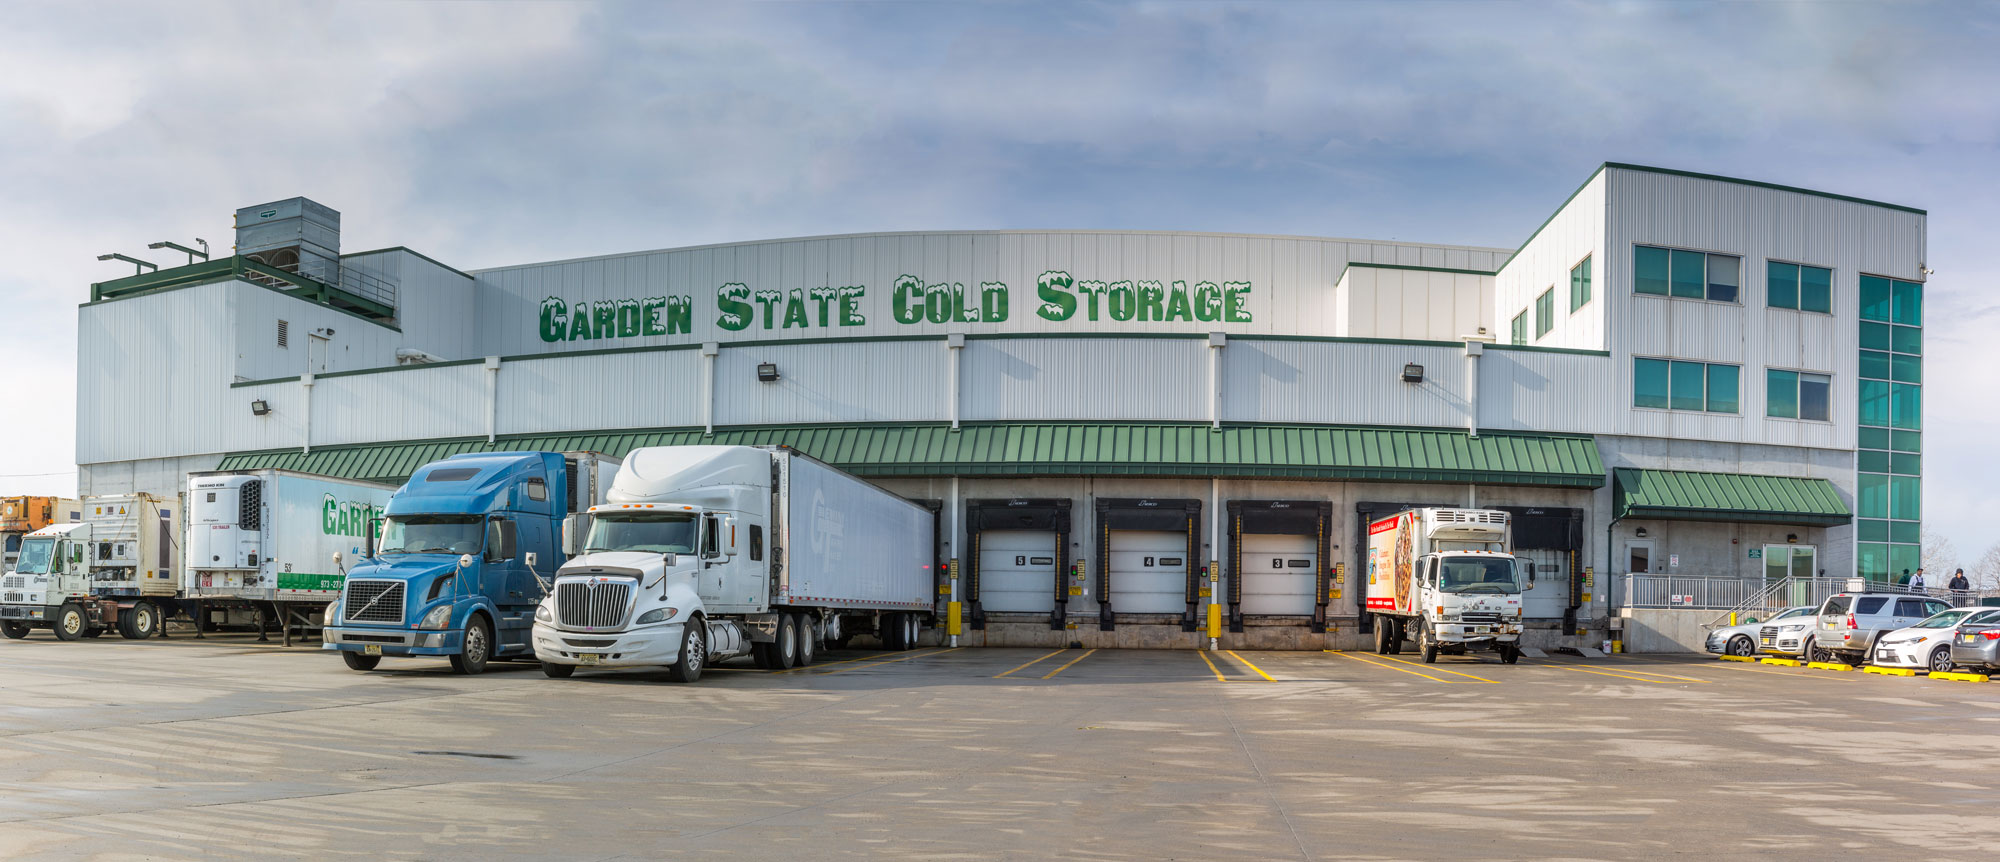 Garden-state-cold-storage-transportation-bg-3 - Garden State Cold Storage